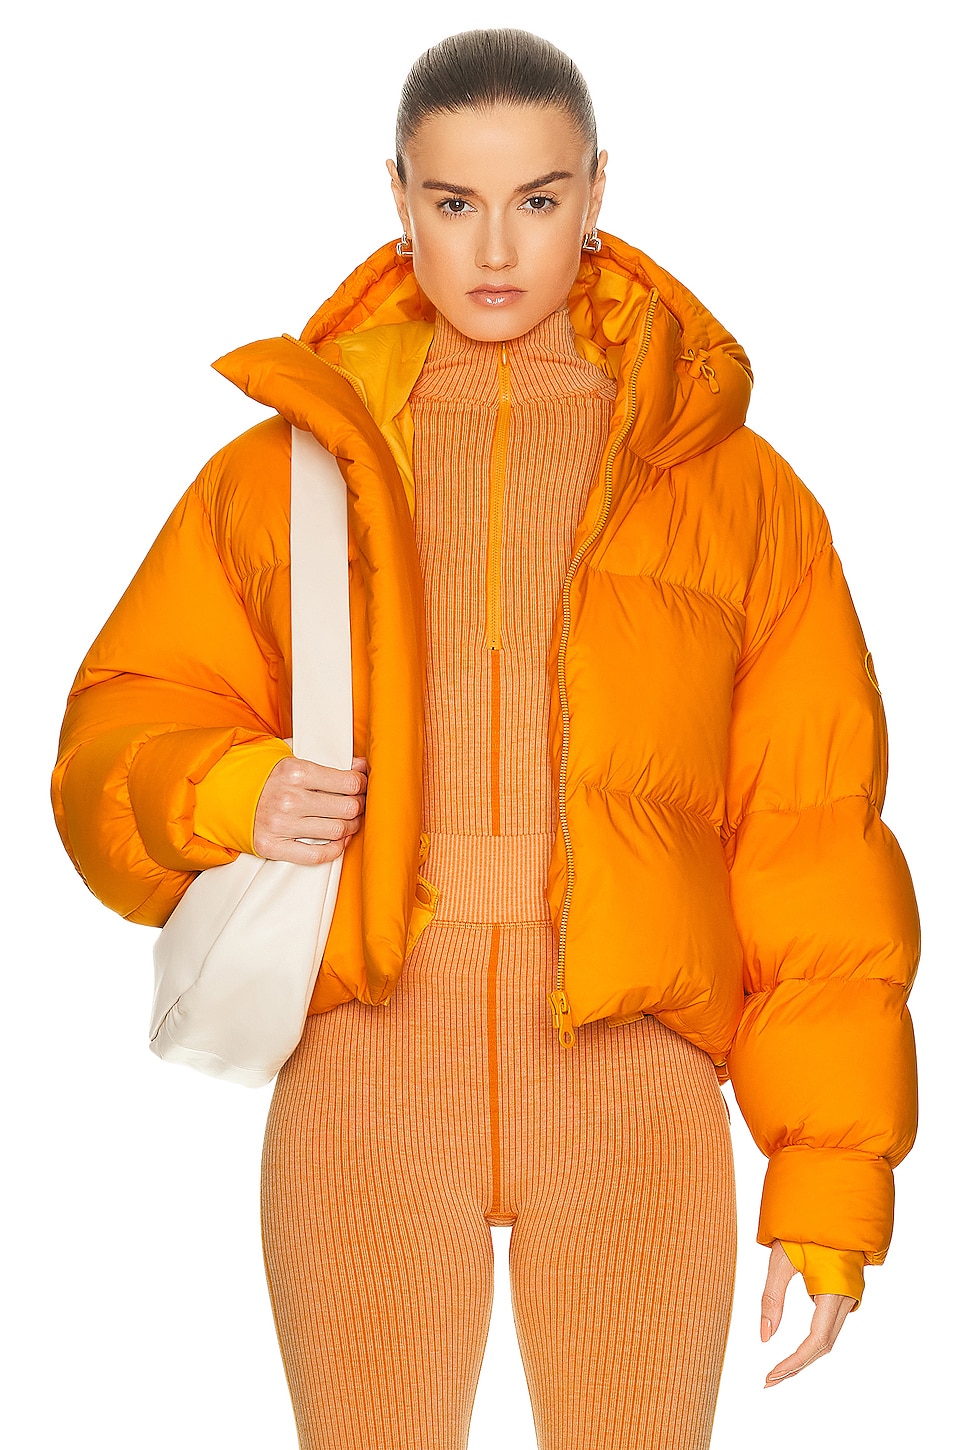 Aomori Jacket in Tangerine